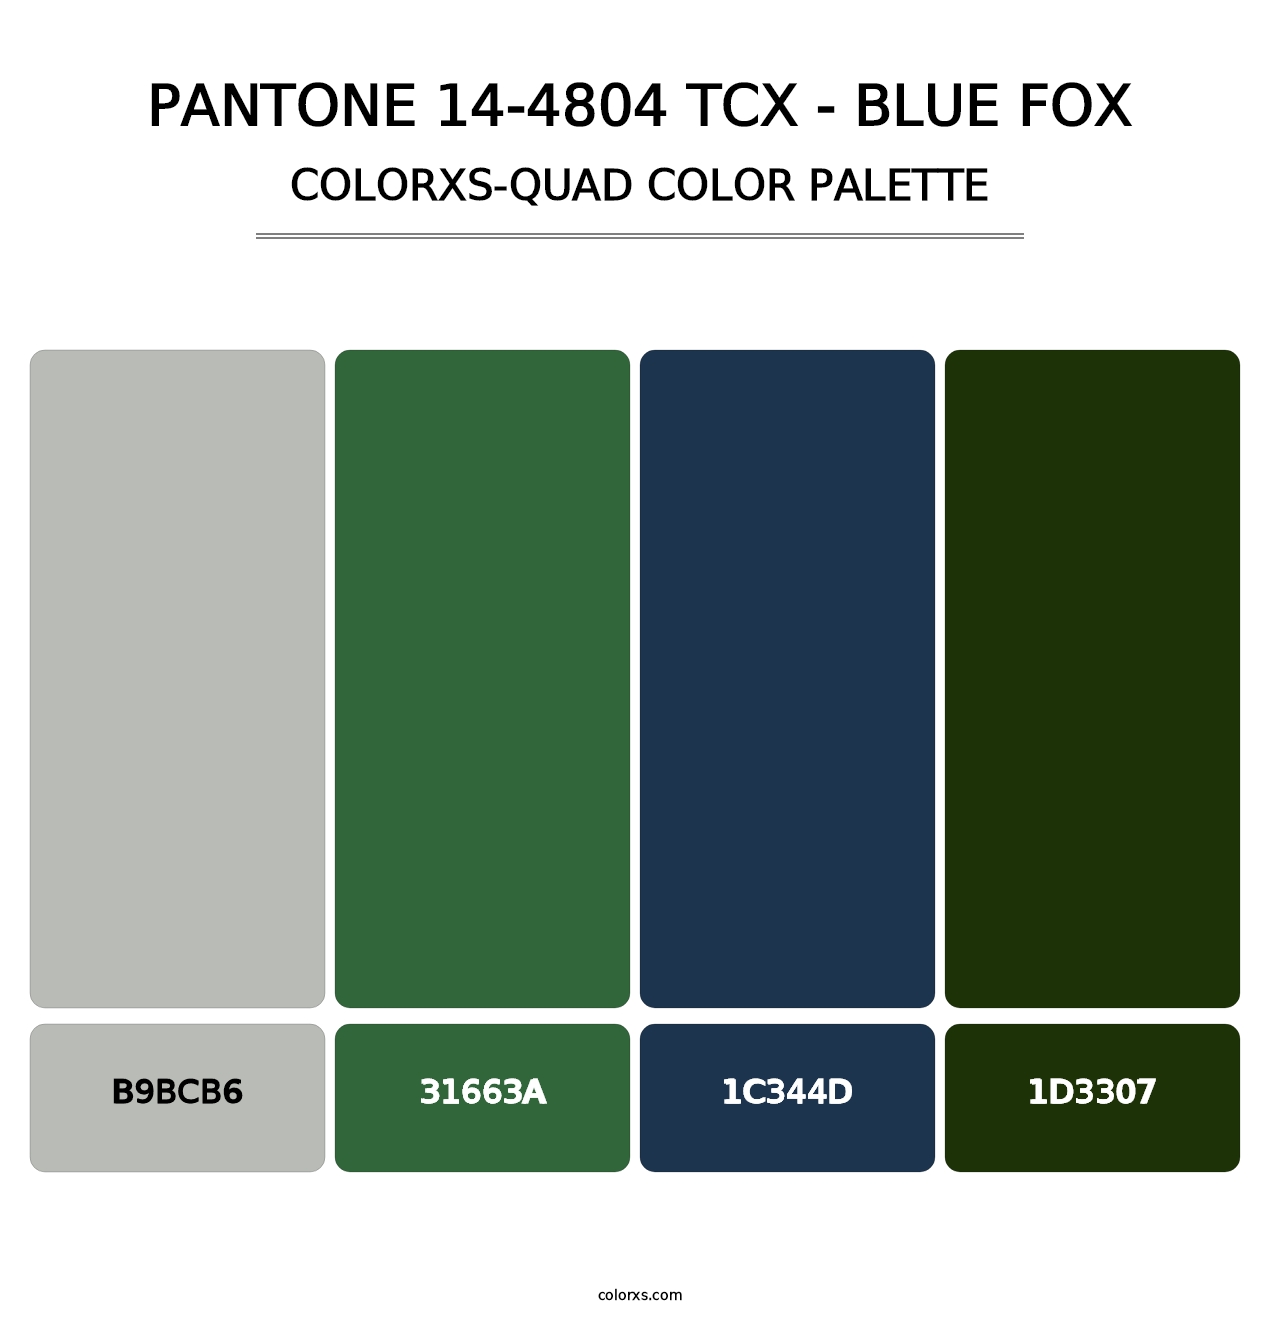 PANTONE 14-4804 TCX - Blue Fox - Colorxs Quad Palette